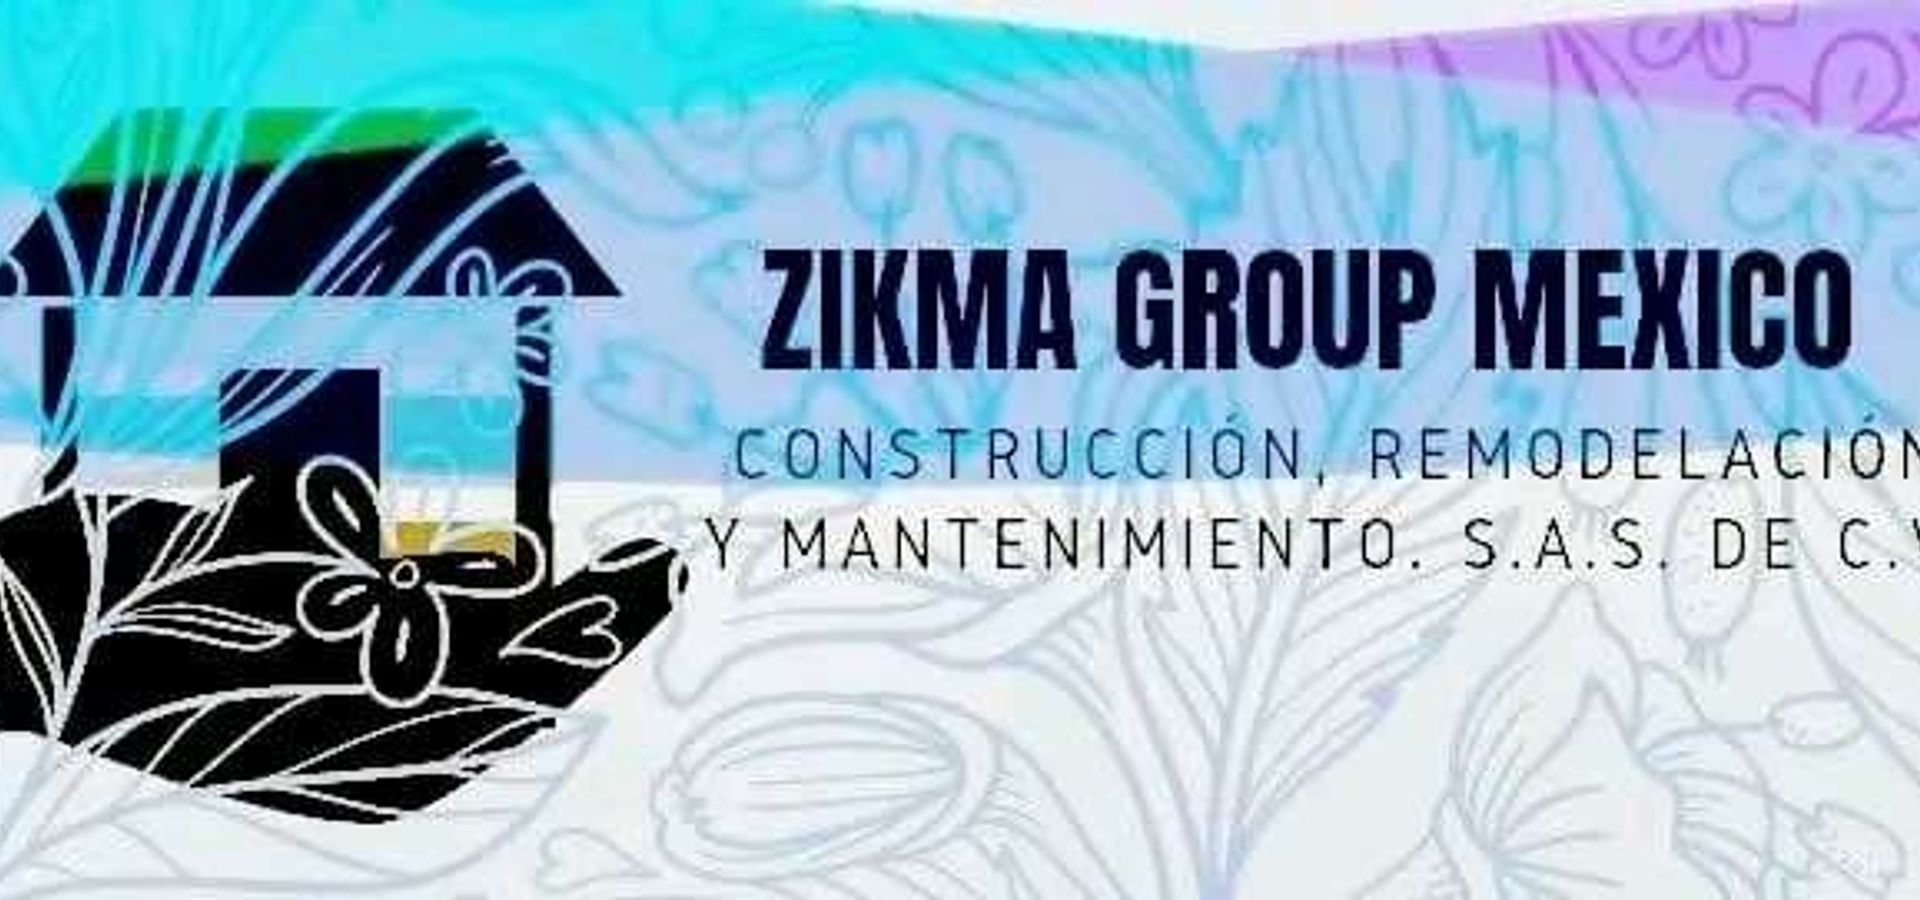 ZIKMA GROUP MEXICO Construccion, Remodelacion y Mantenimiento S.A.S DE C.V.